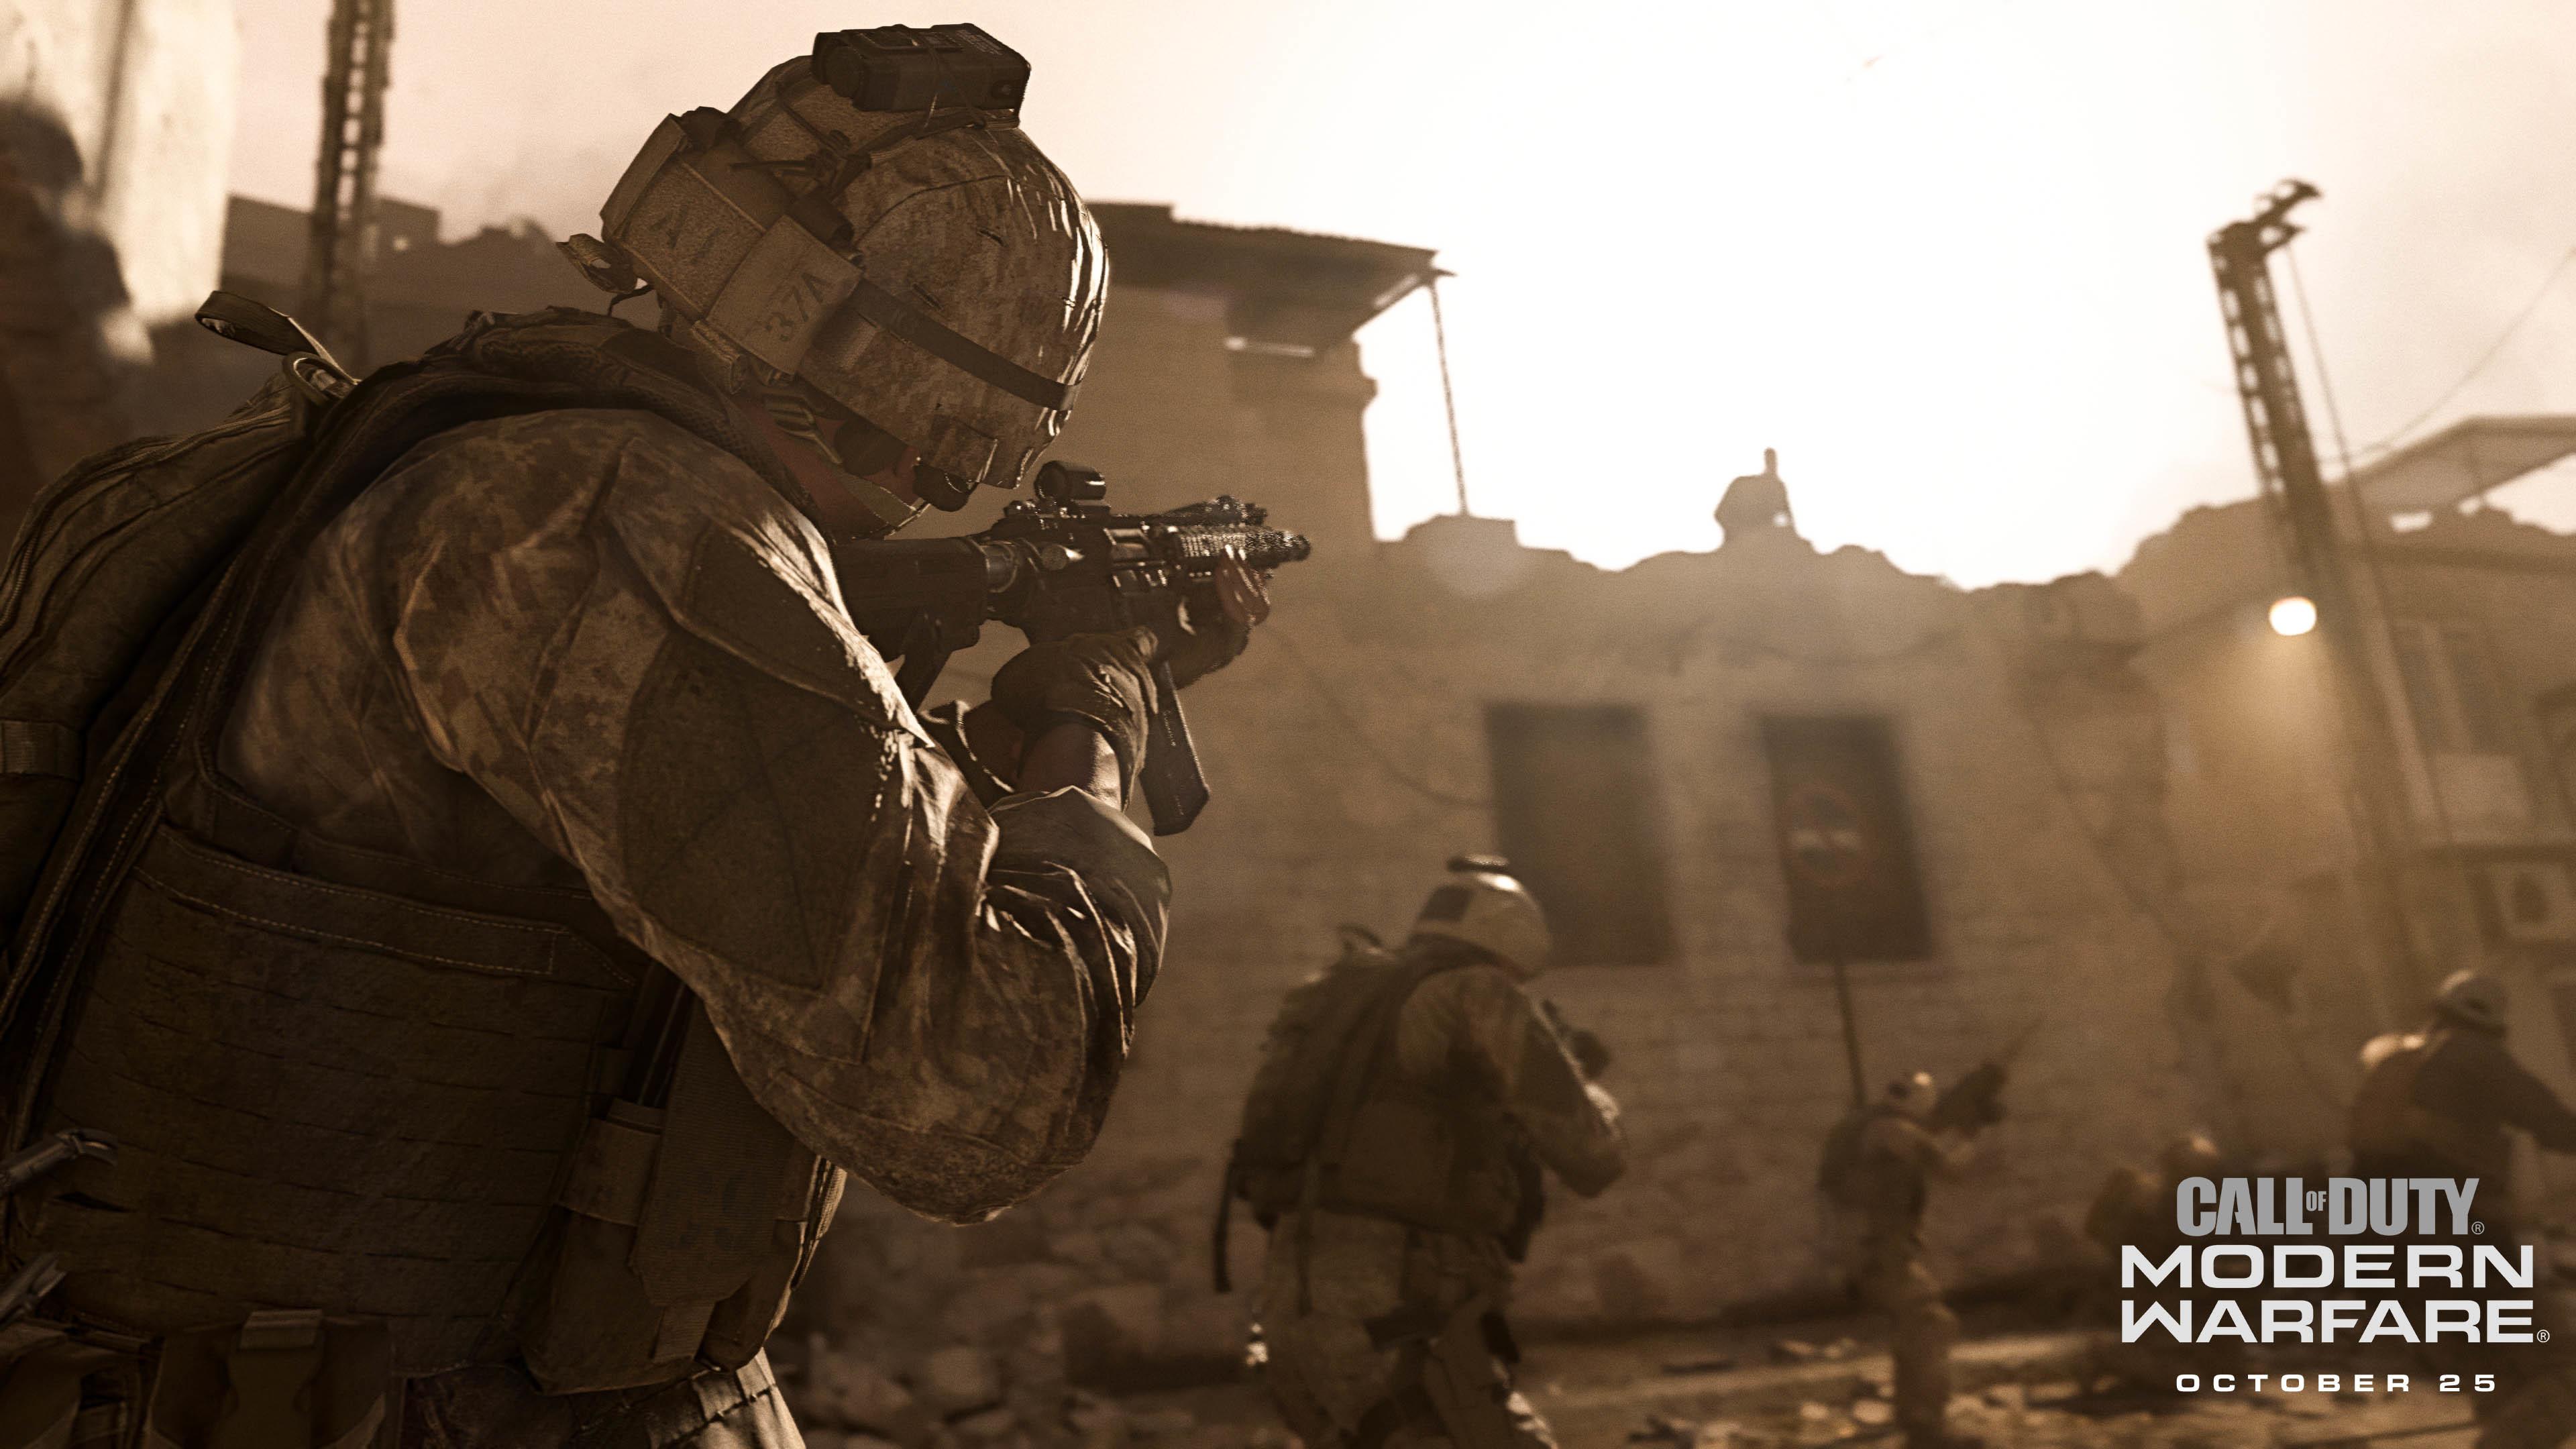 2019's Call Of Duty Is A Reboot Of Modern Warfare, Release Date